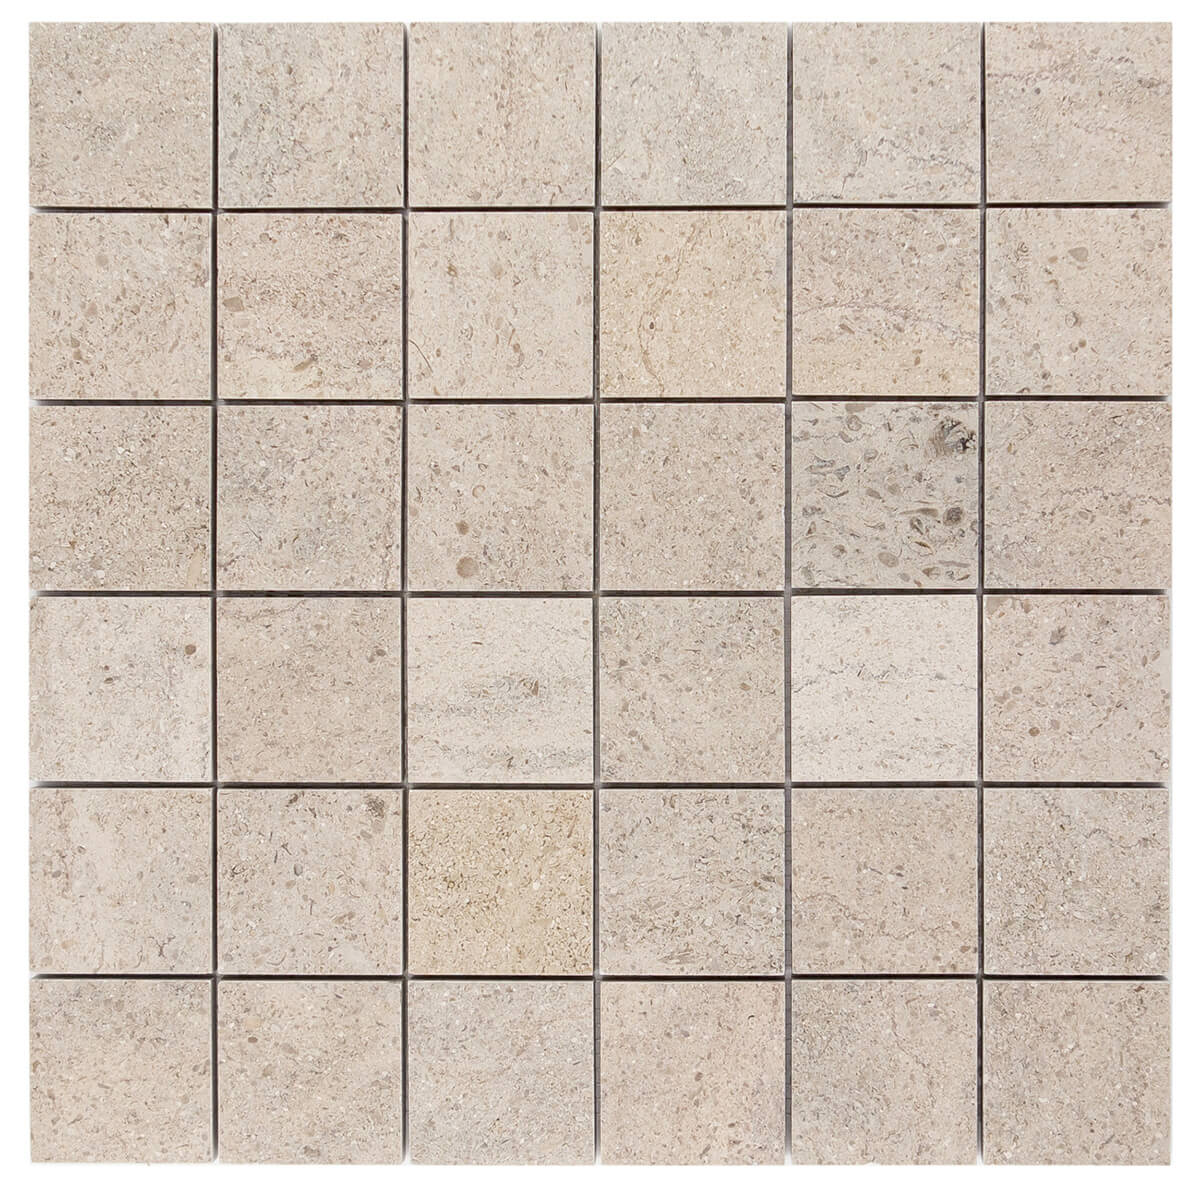 haussmann fontainebleau gascogne blue limestone square mosaic tile 2x2 honed